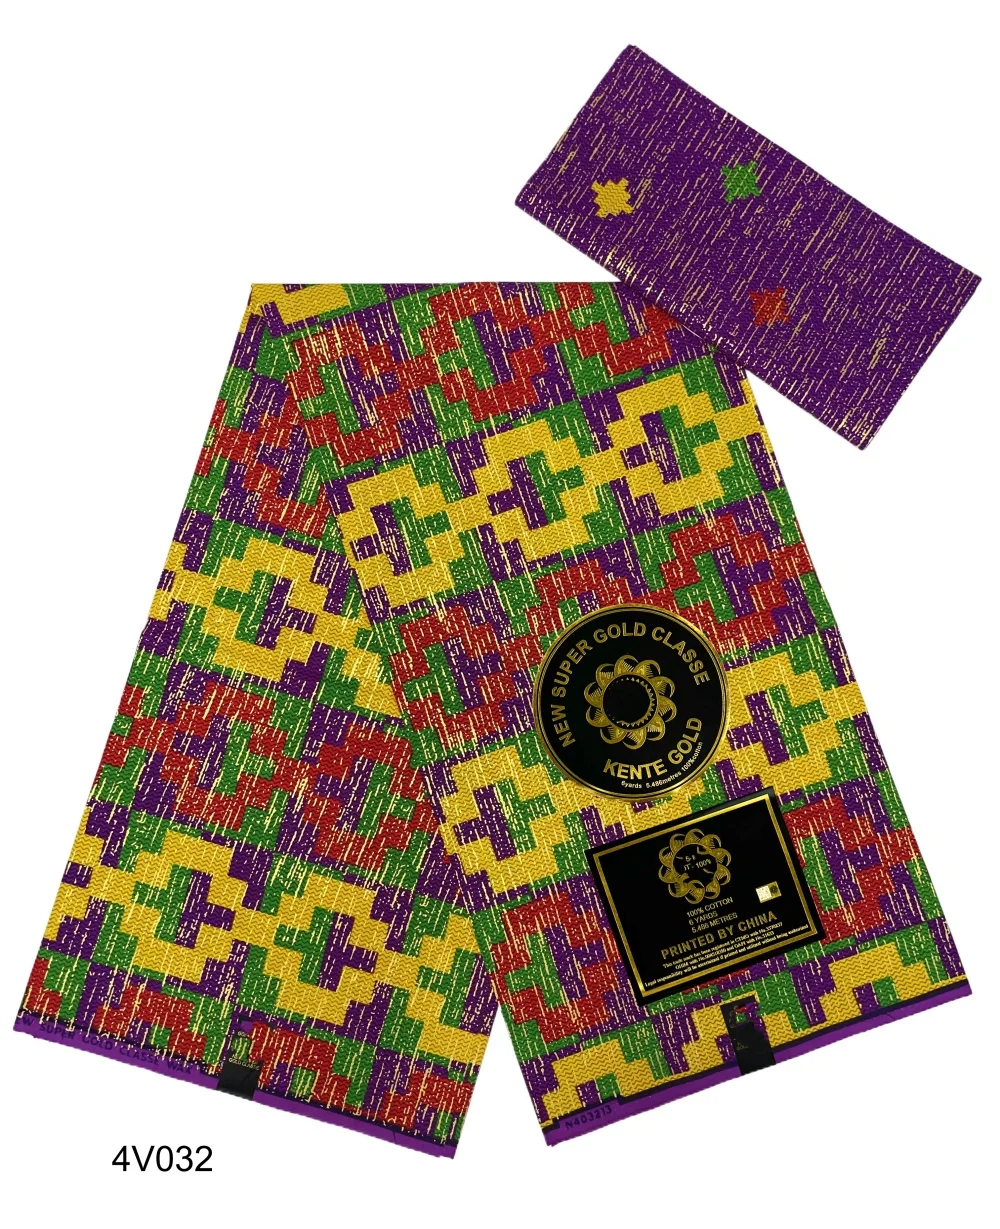 

2024 Новое поступление Kente Golden 4 + 2 африканская восковая ткань 100% хлопок Нигерия Анкара восковая ткань батик голландская Высококачественная швейная ткань